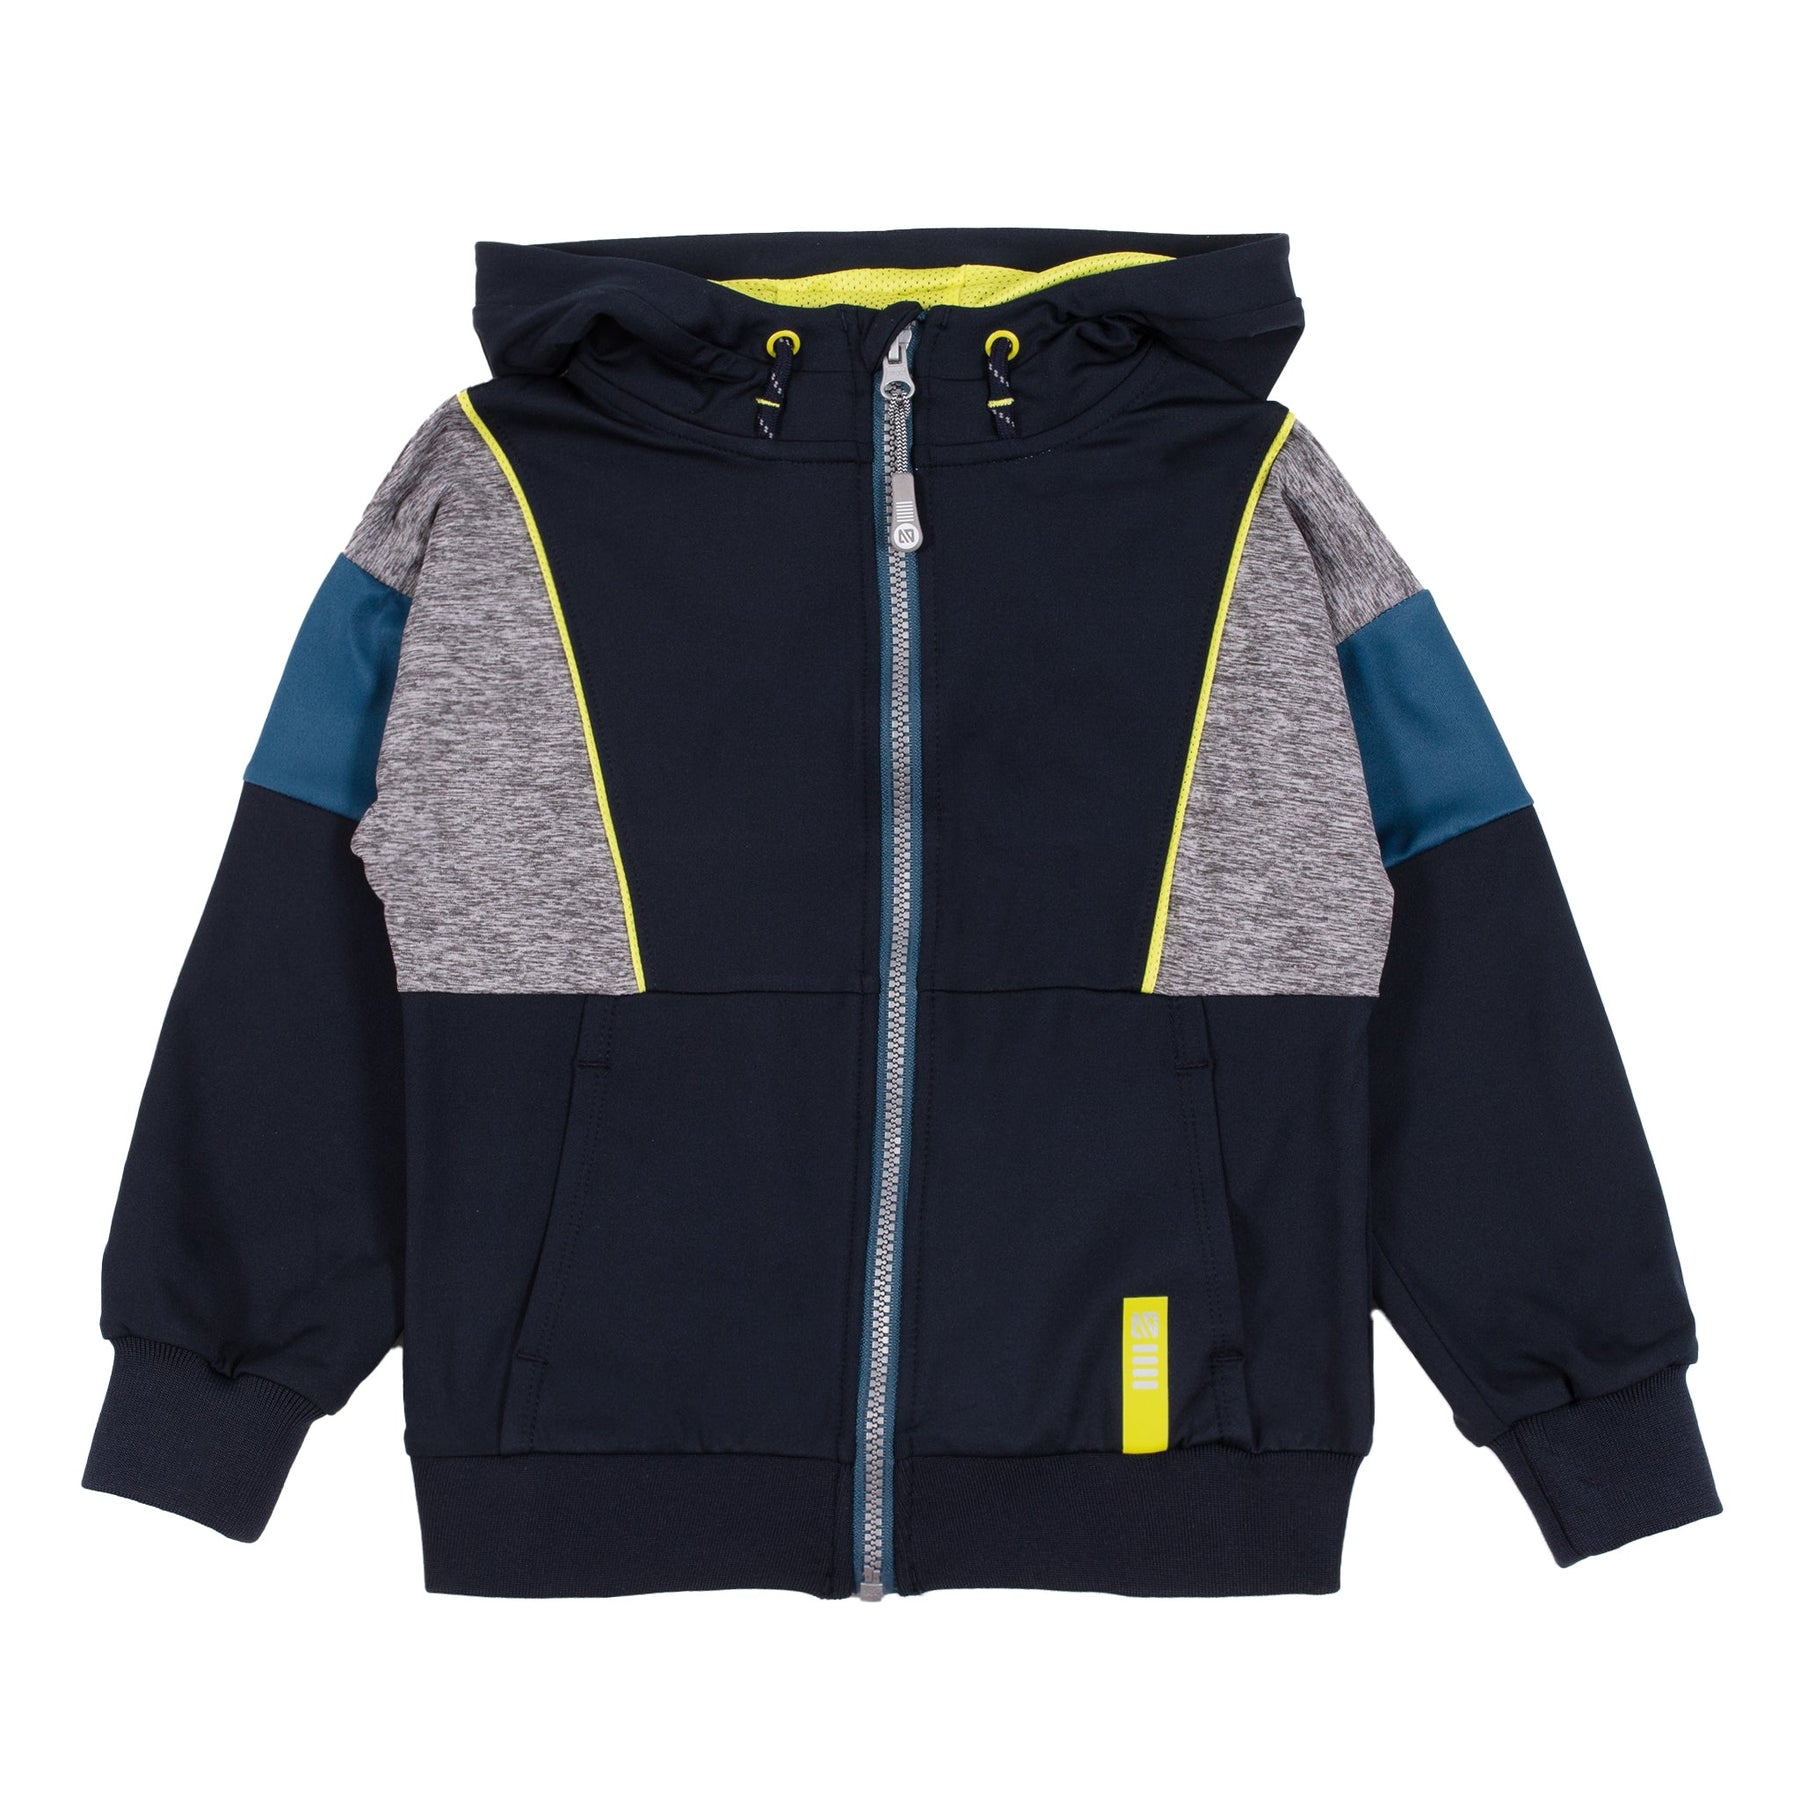 Veste athlétique pour enfant garçon par Nanö | F22A81-01 Marine | Boutique Flos, vêtements mode pour bébés et enfants